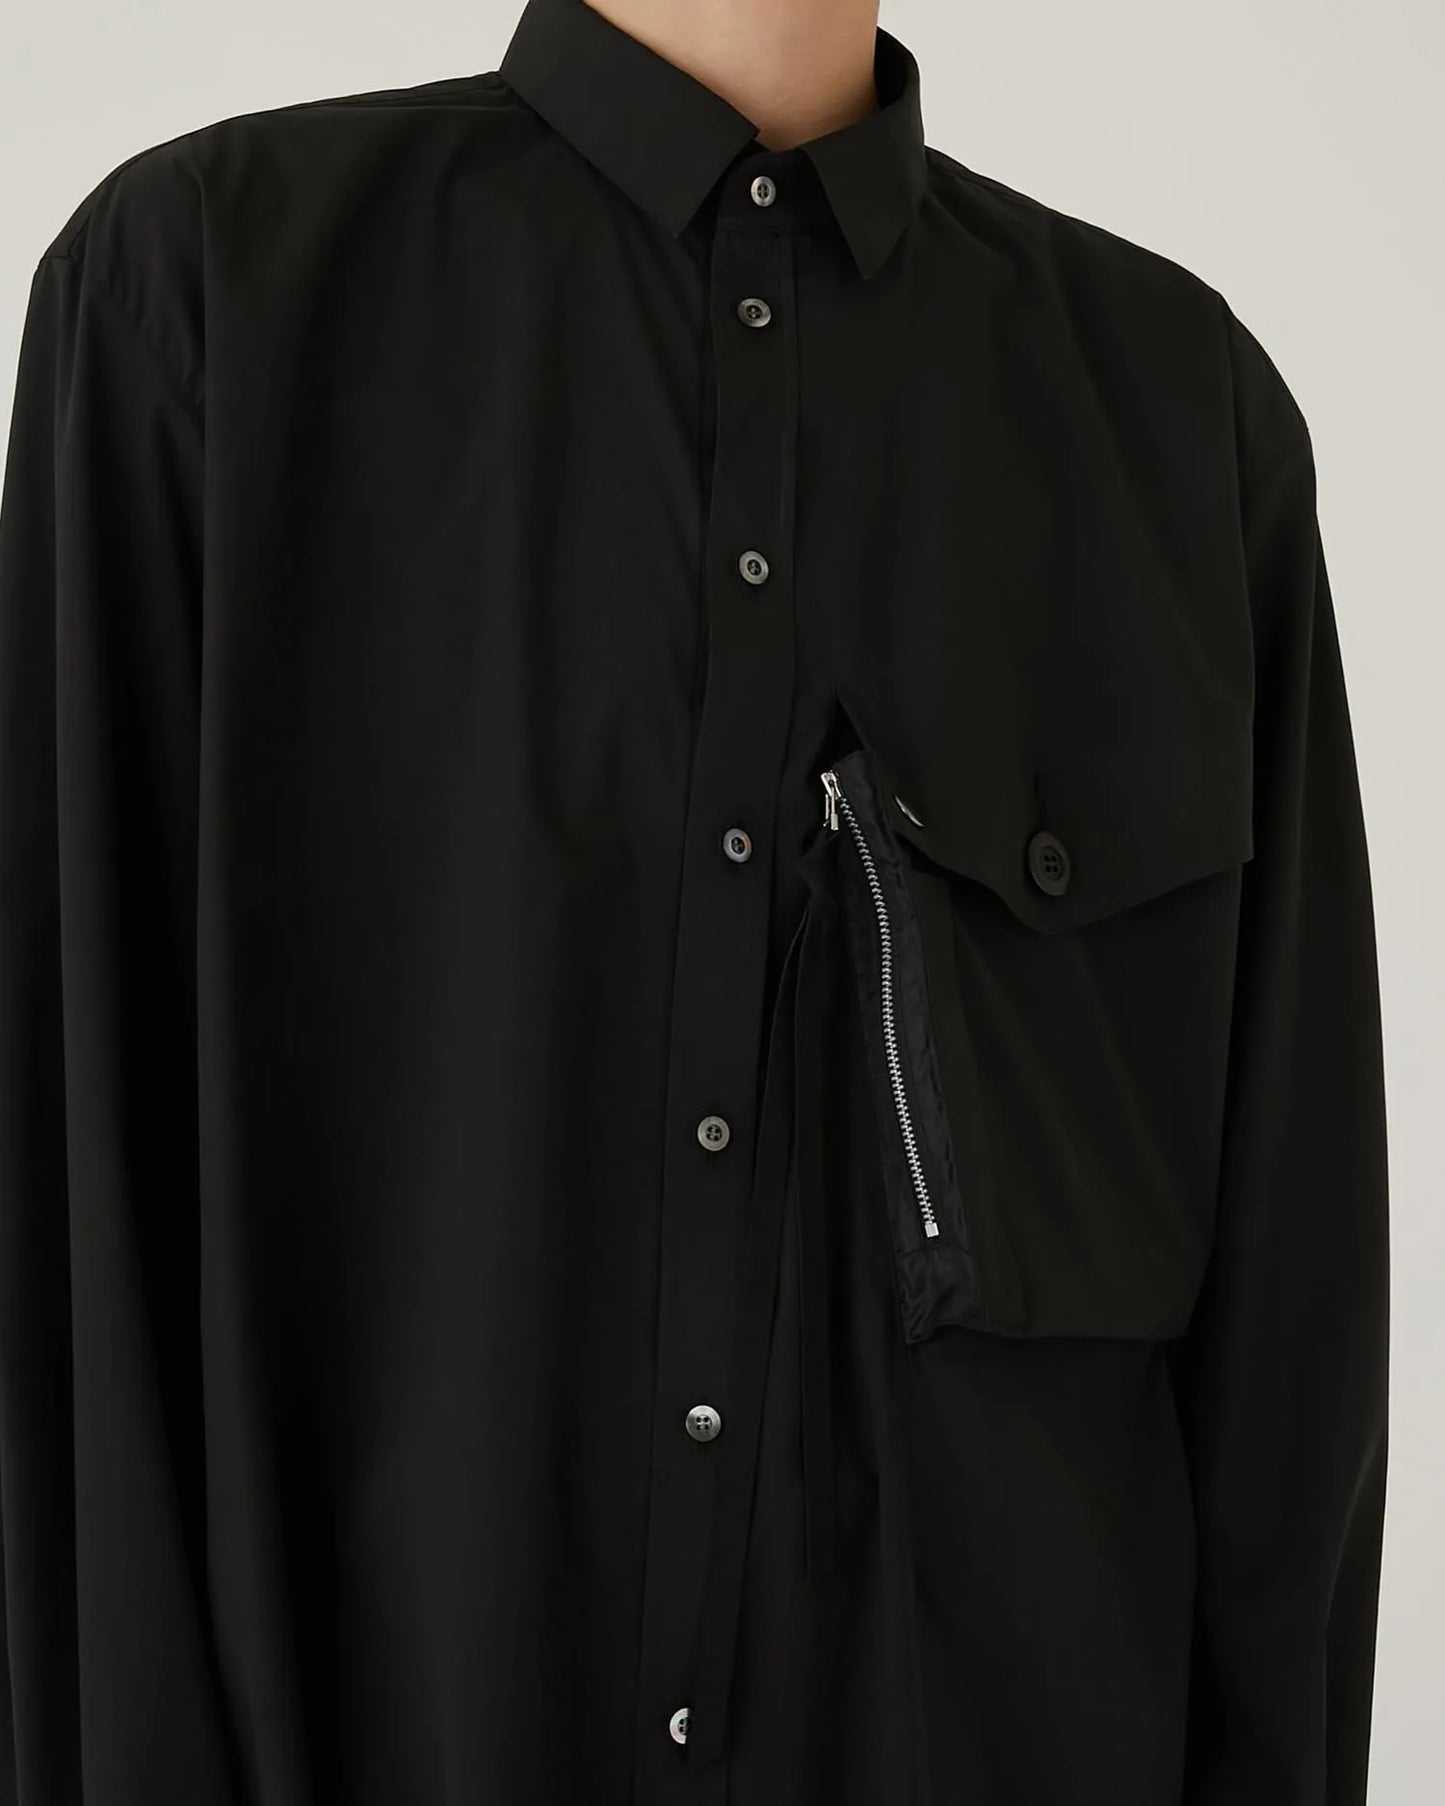 TYPEWRITER DRESS SHIRT BLACK